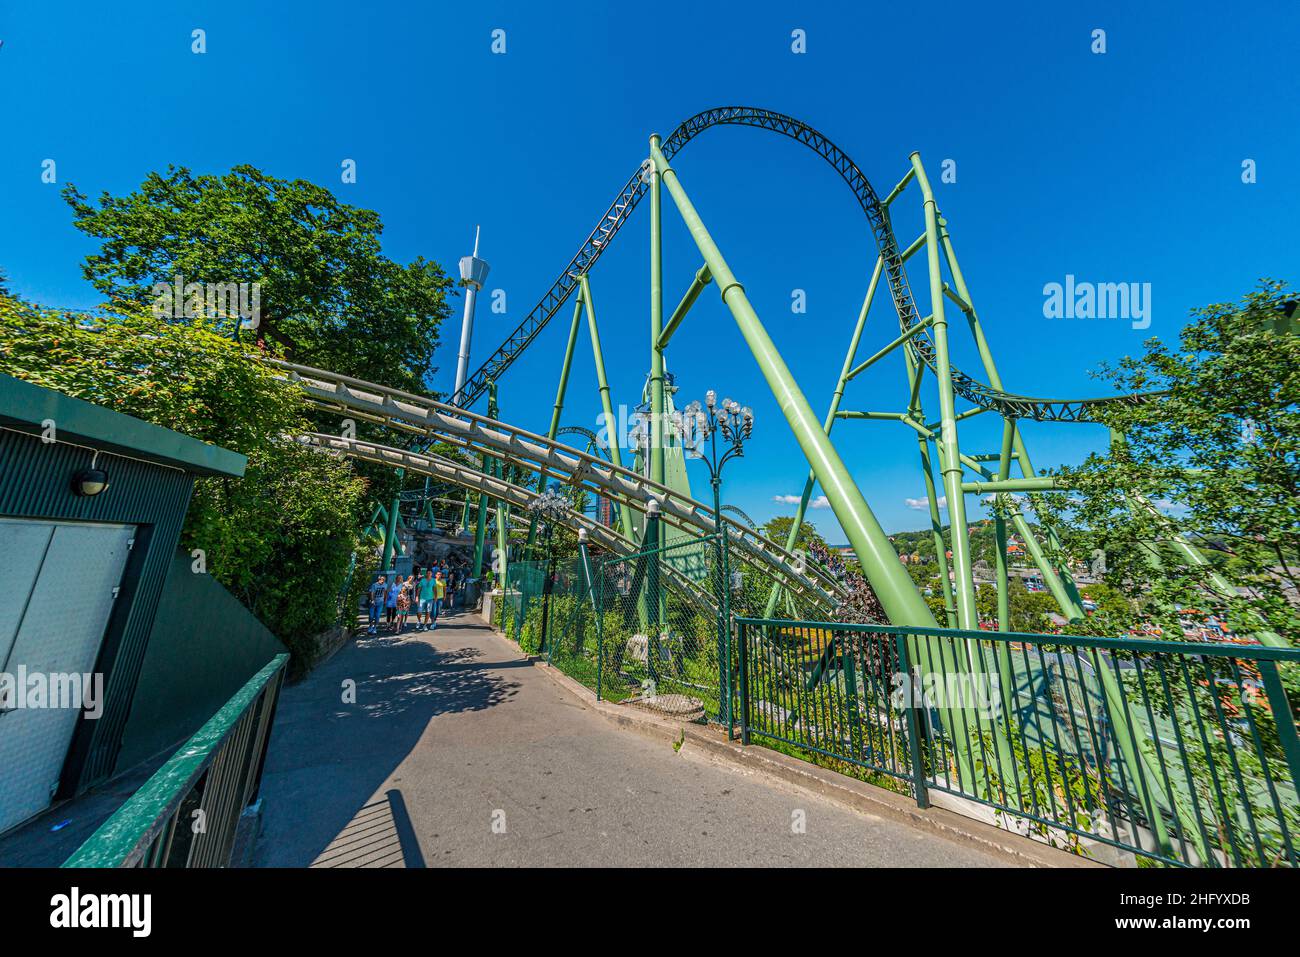 Gothenburg, Sweden - June 15 2014: Tracks of roller coaster Helix at Liseberg amusement park.. Stock Photo